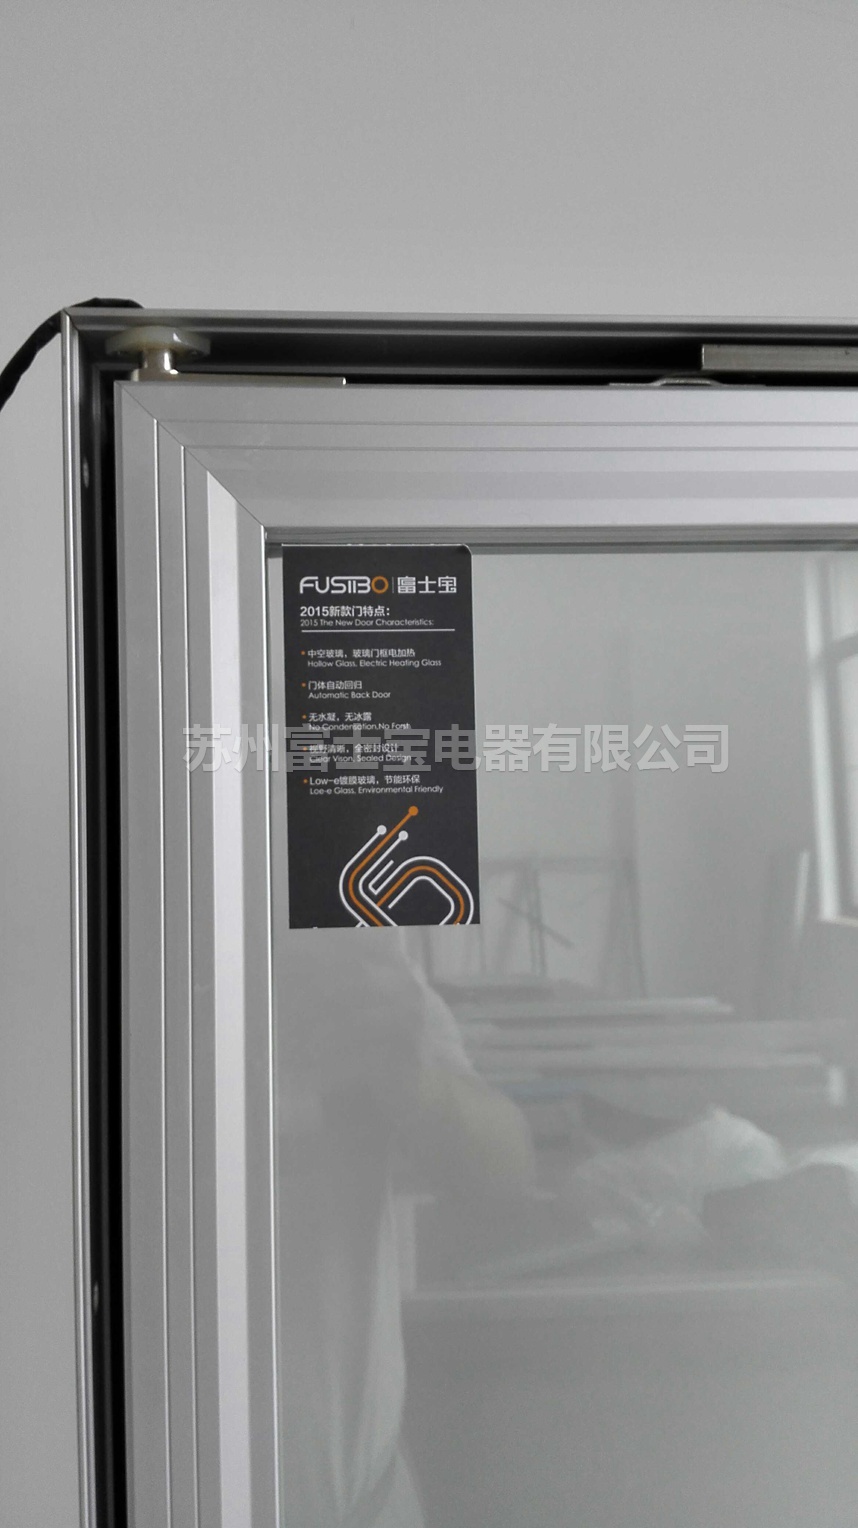 Refrigerator with hollow glass door